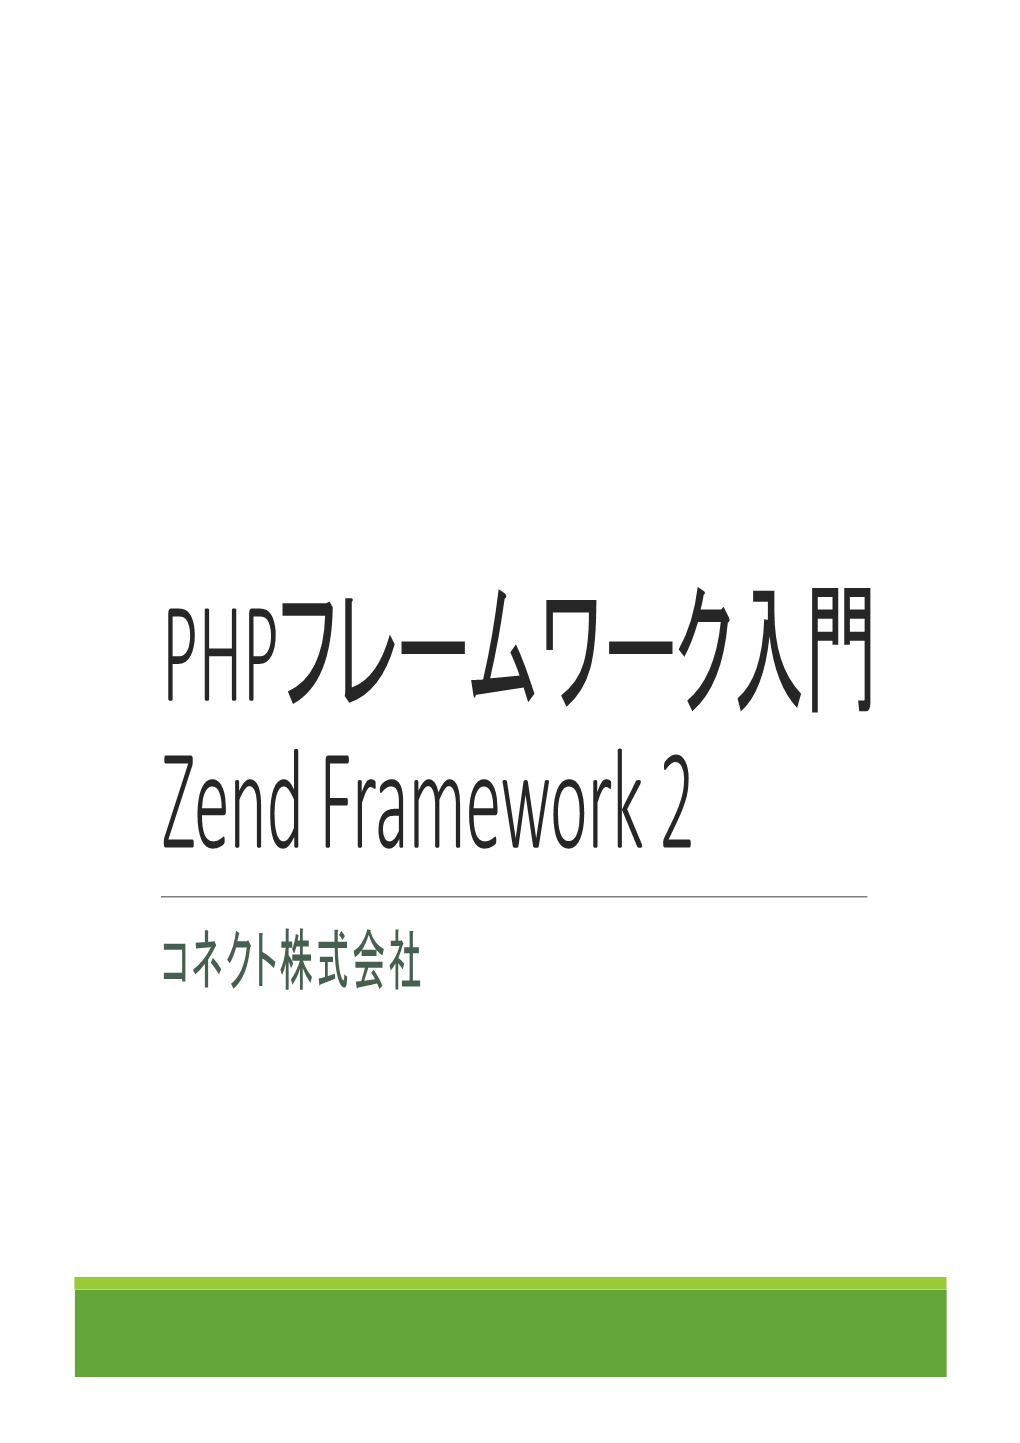 PHPフレームワーク入門 Zend Framework 2 コネクト株式会社 アジェンダ フレームワークとは ◦ MVC とは Zend Framework 2 入門 ◦ Zend Framework 2 のインストールと動作確認 ◦ Zend Framework 2 を使用したシンプルな例題